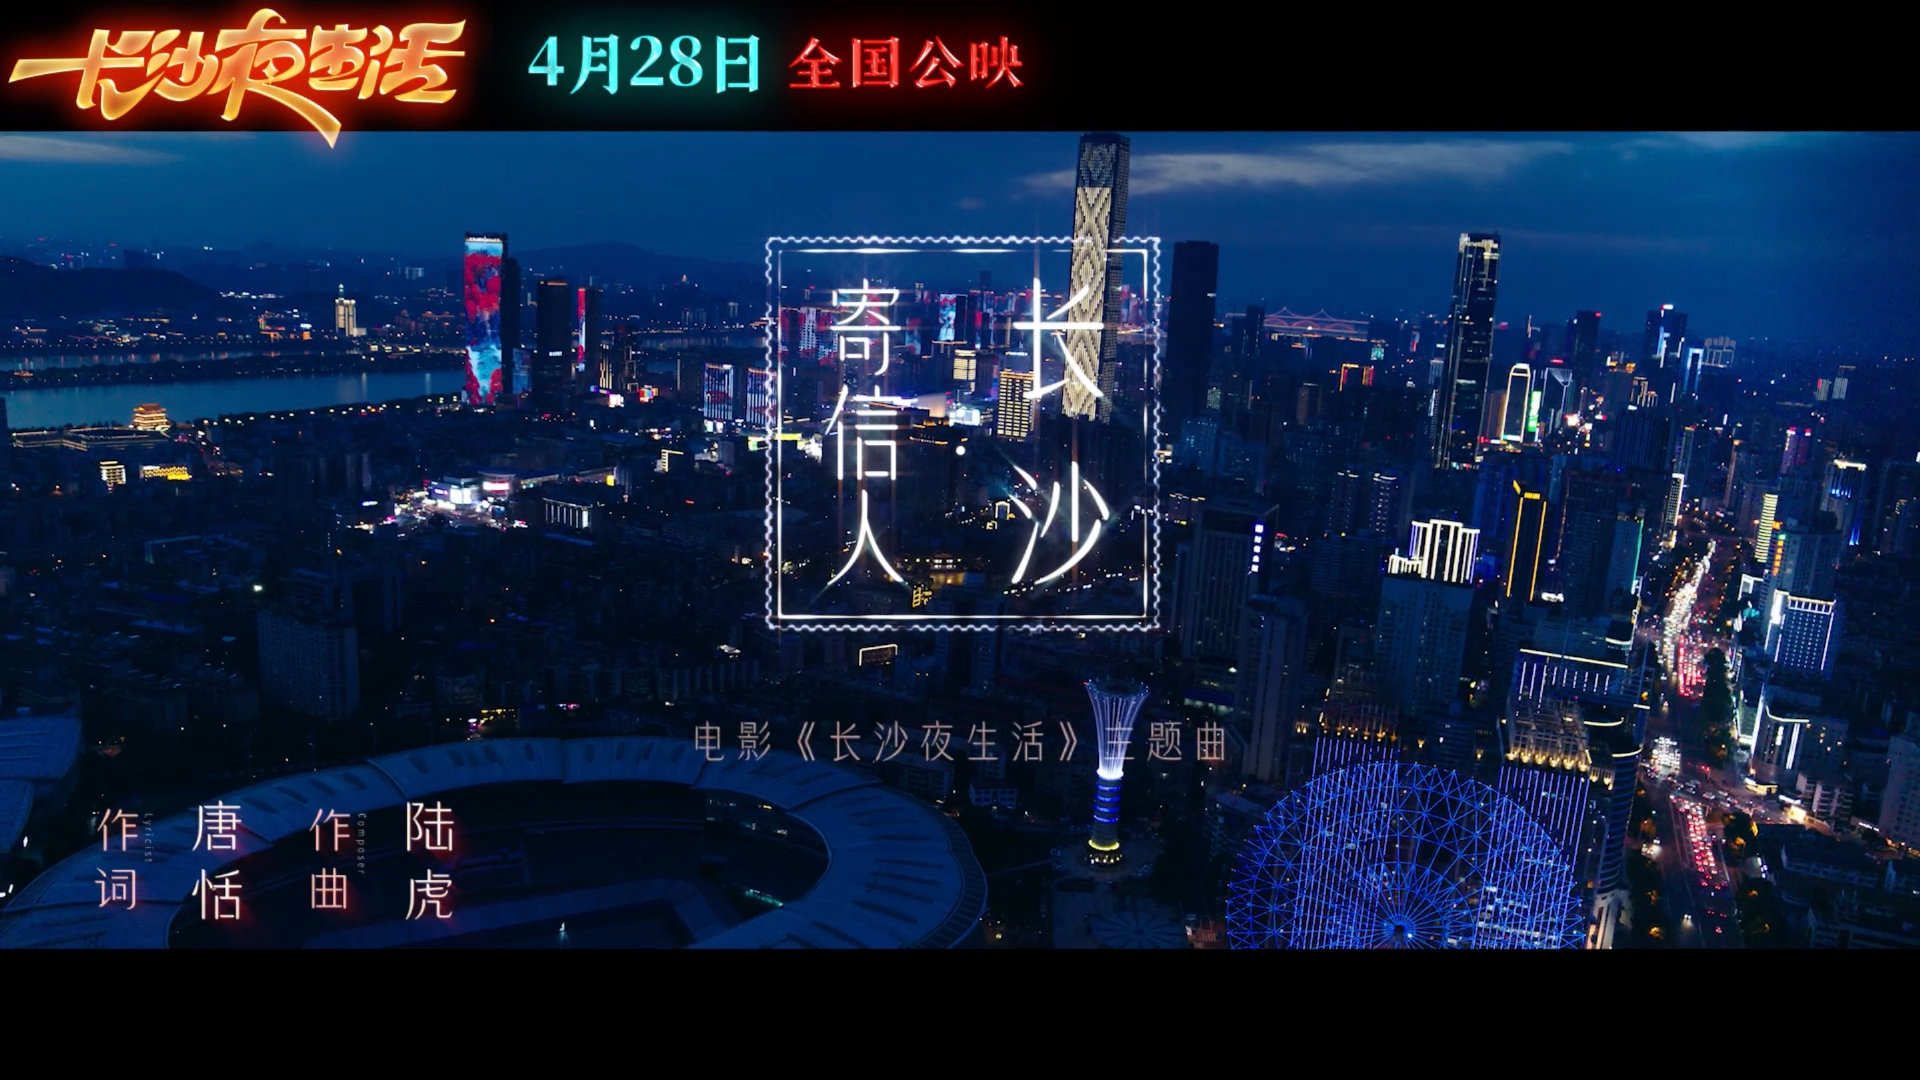 五一档电影《长沙夜生活》发布主题曲《寄信人长沙》MV